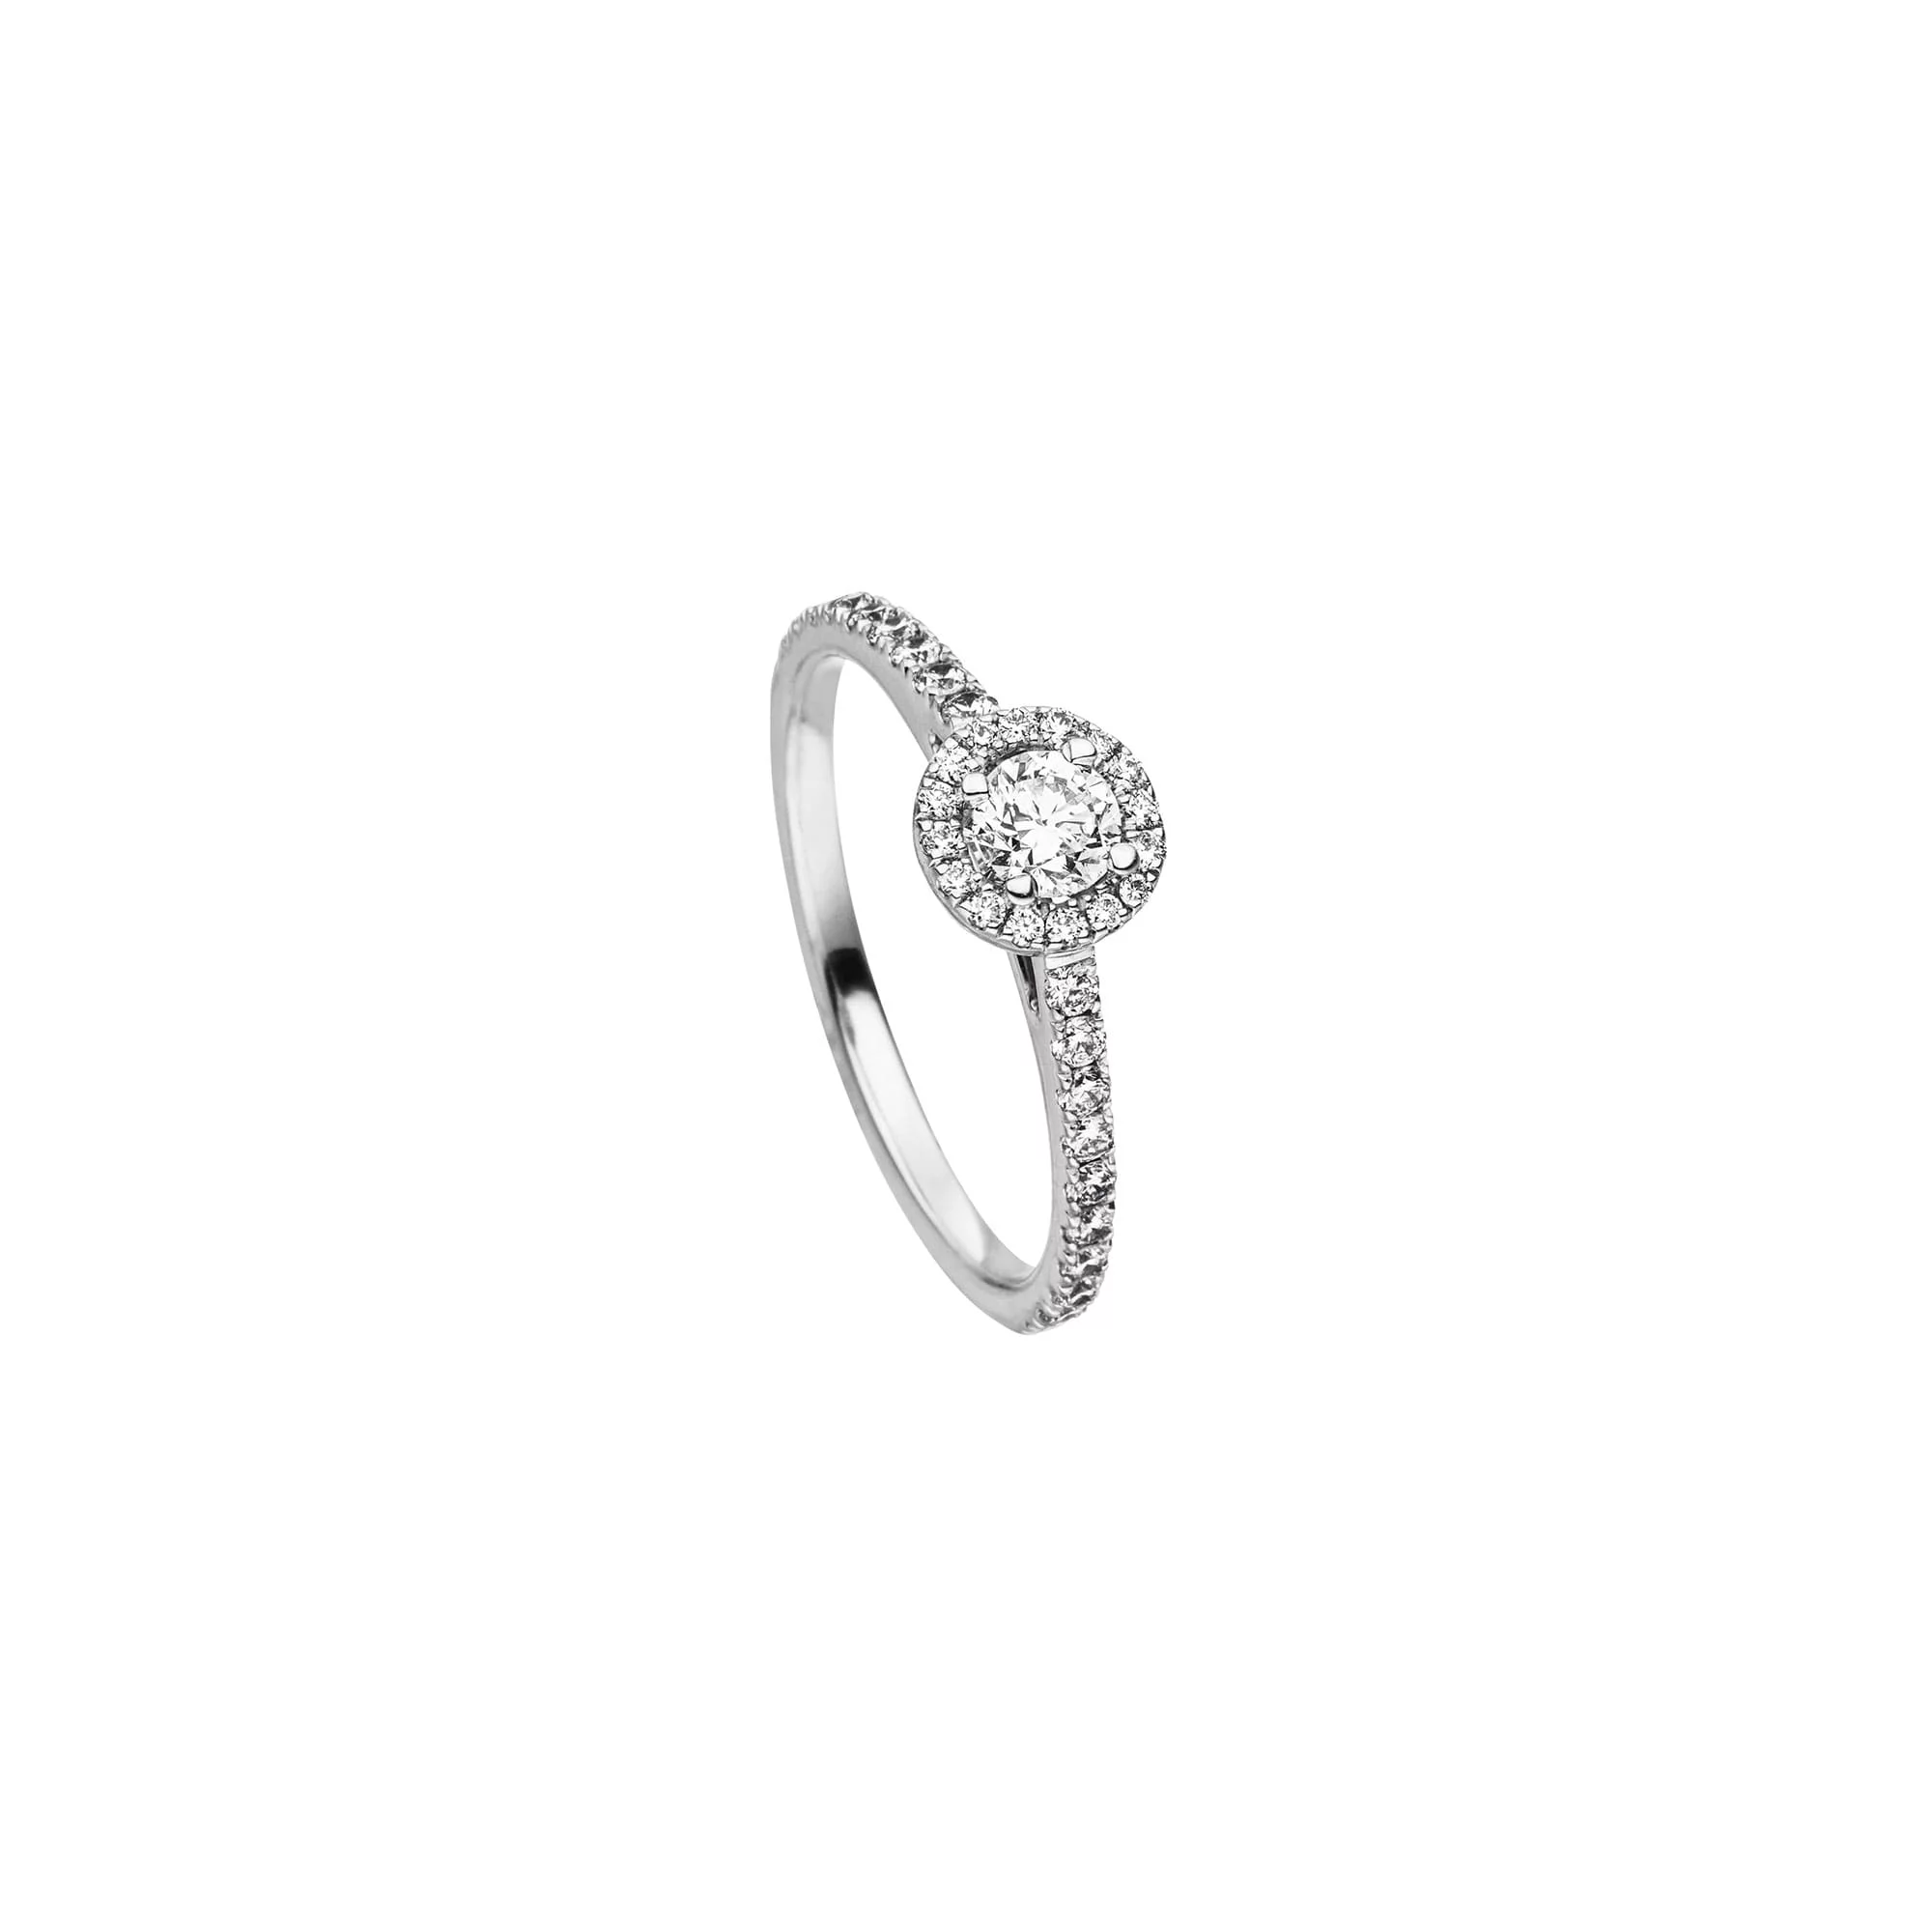 Besondere Ringe in Gold oder Silber, mit oder Ohne Diamanten oder farbigen Edelsteinen bei Juwelier Fridrich in München.